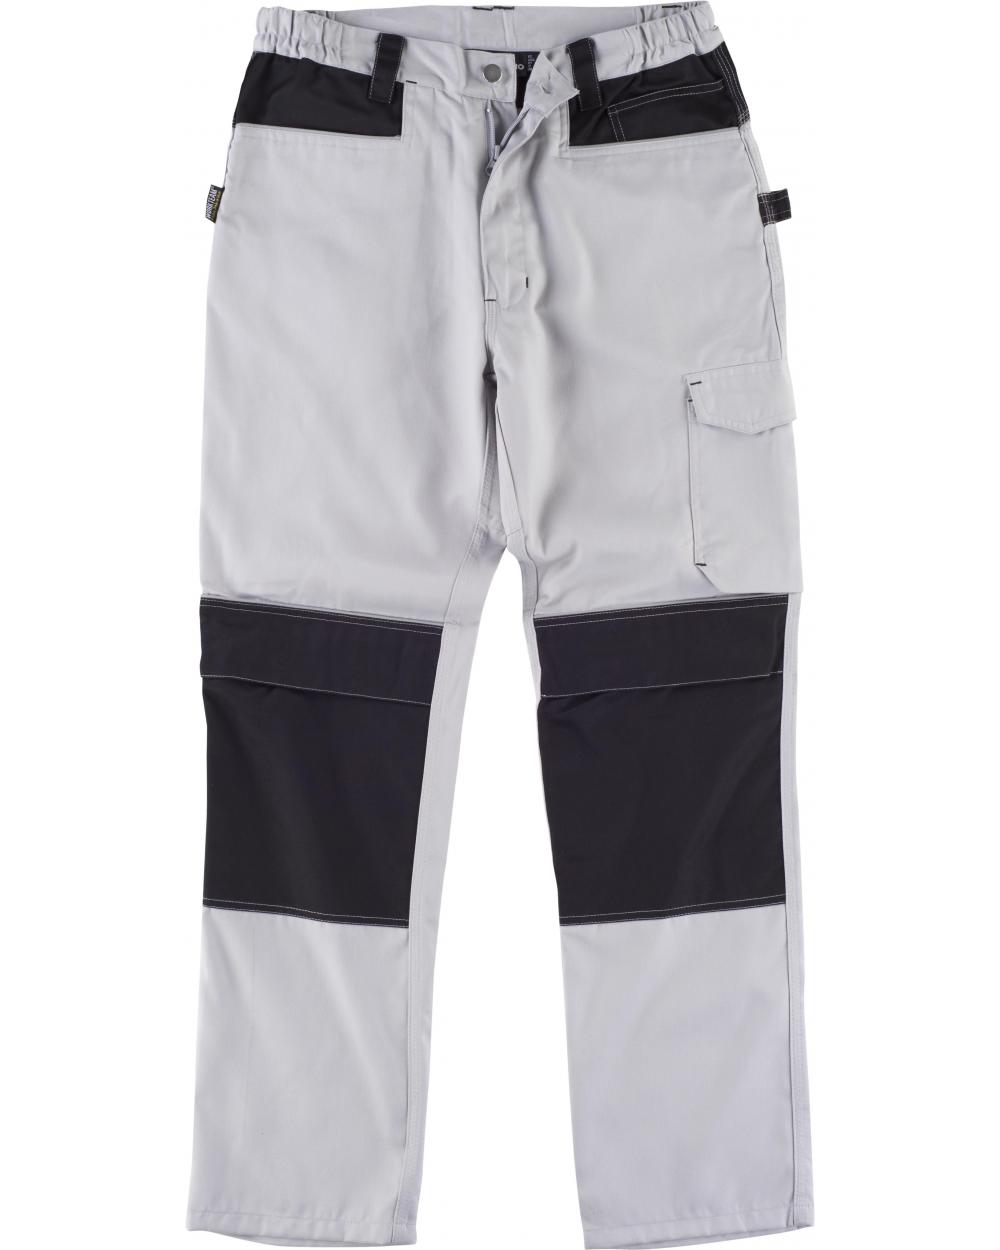 Comprar Pantalon con proteccion rodilleras WF1052 Gris Claro+Negro workteam delante